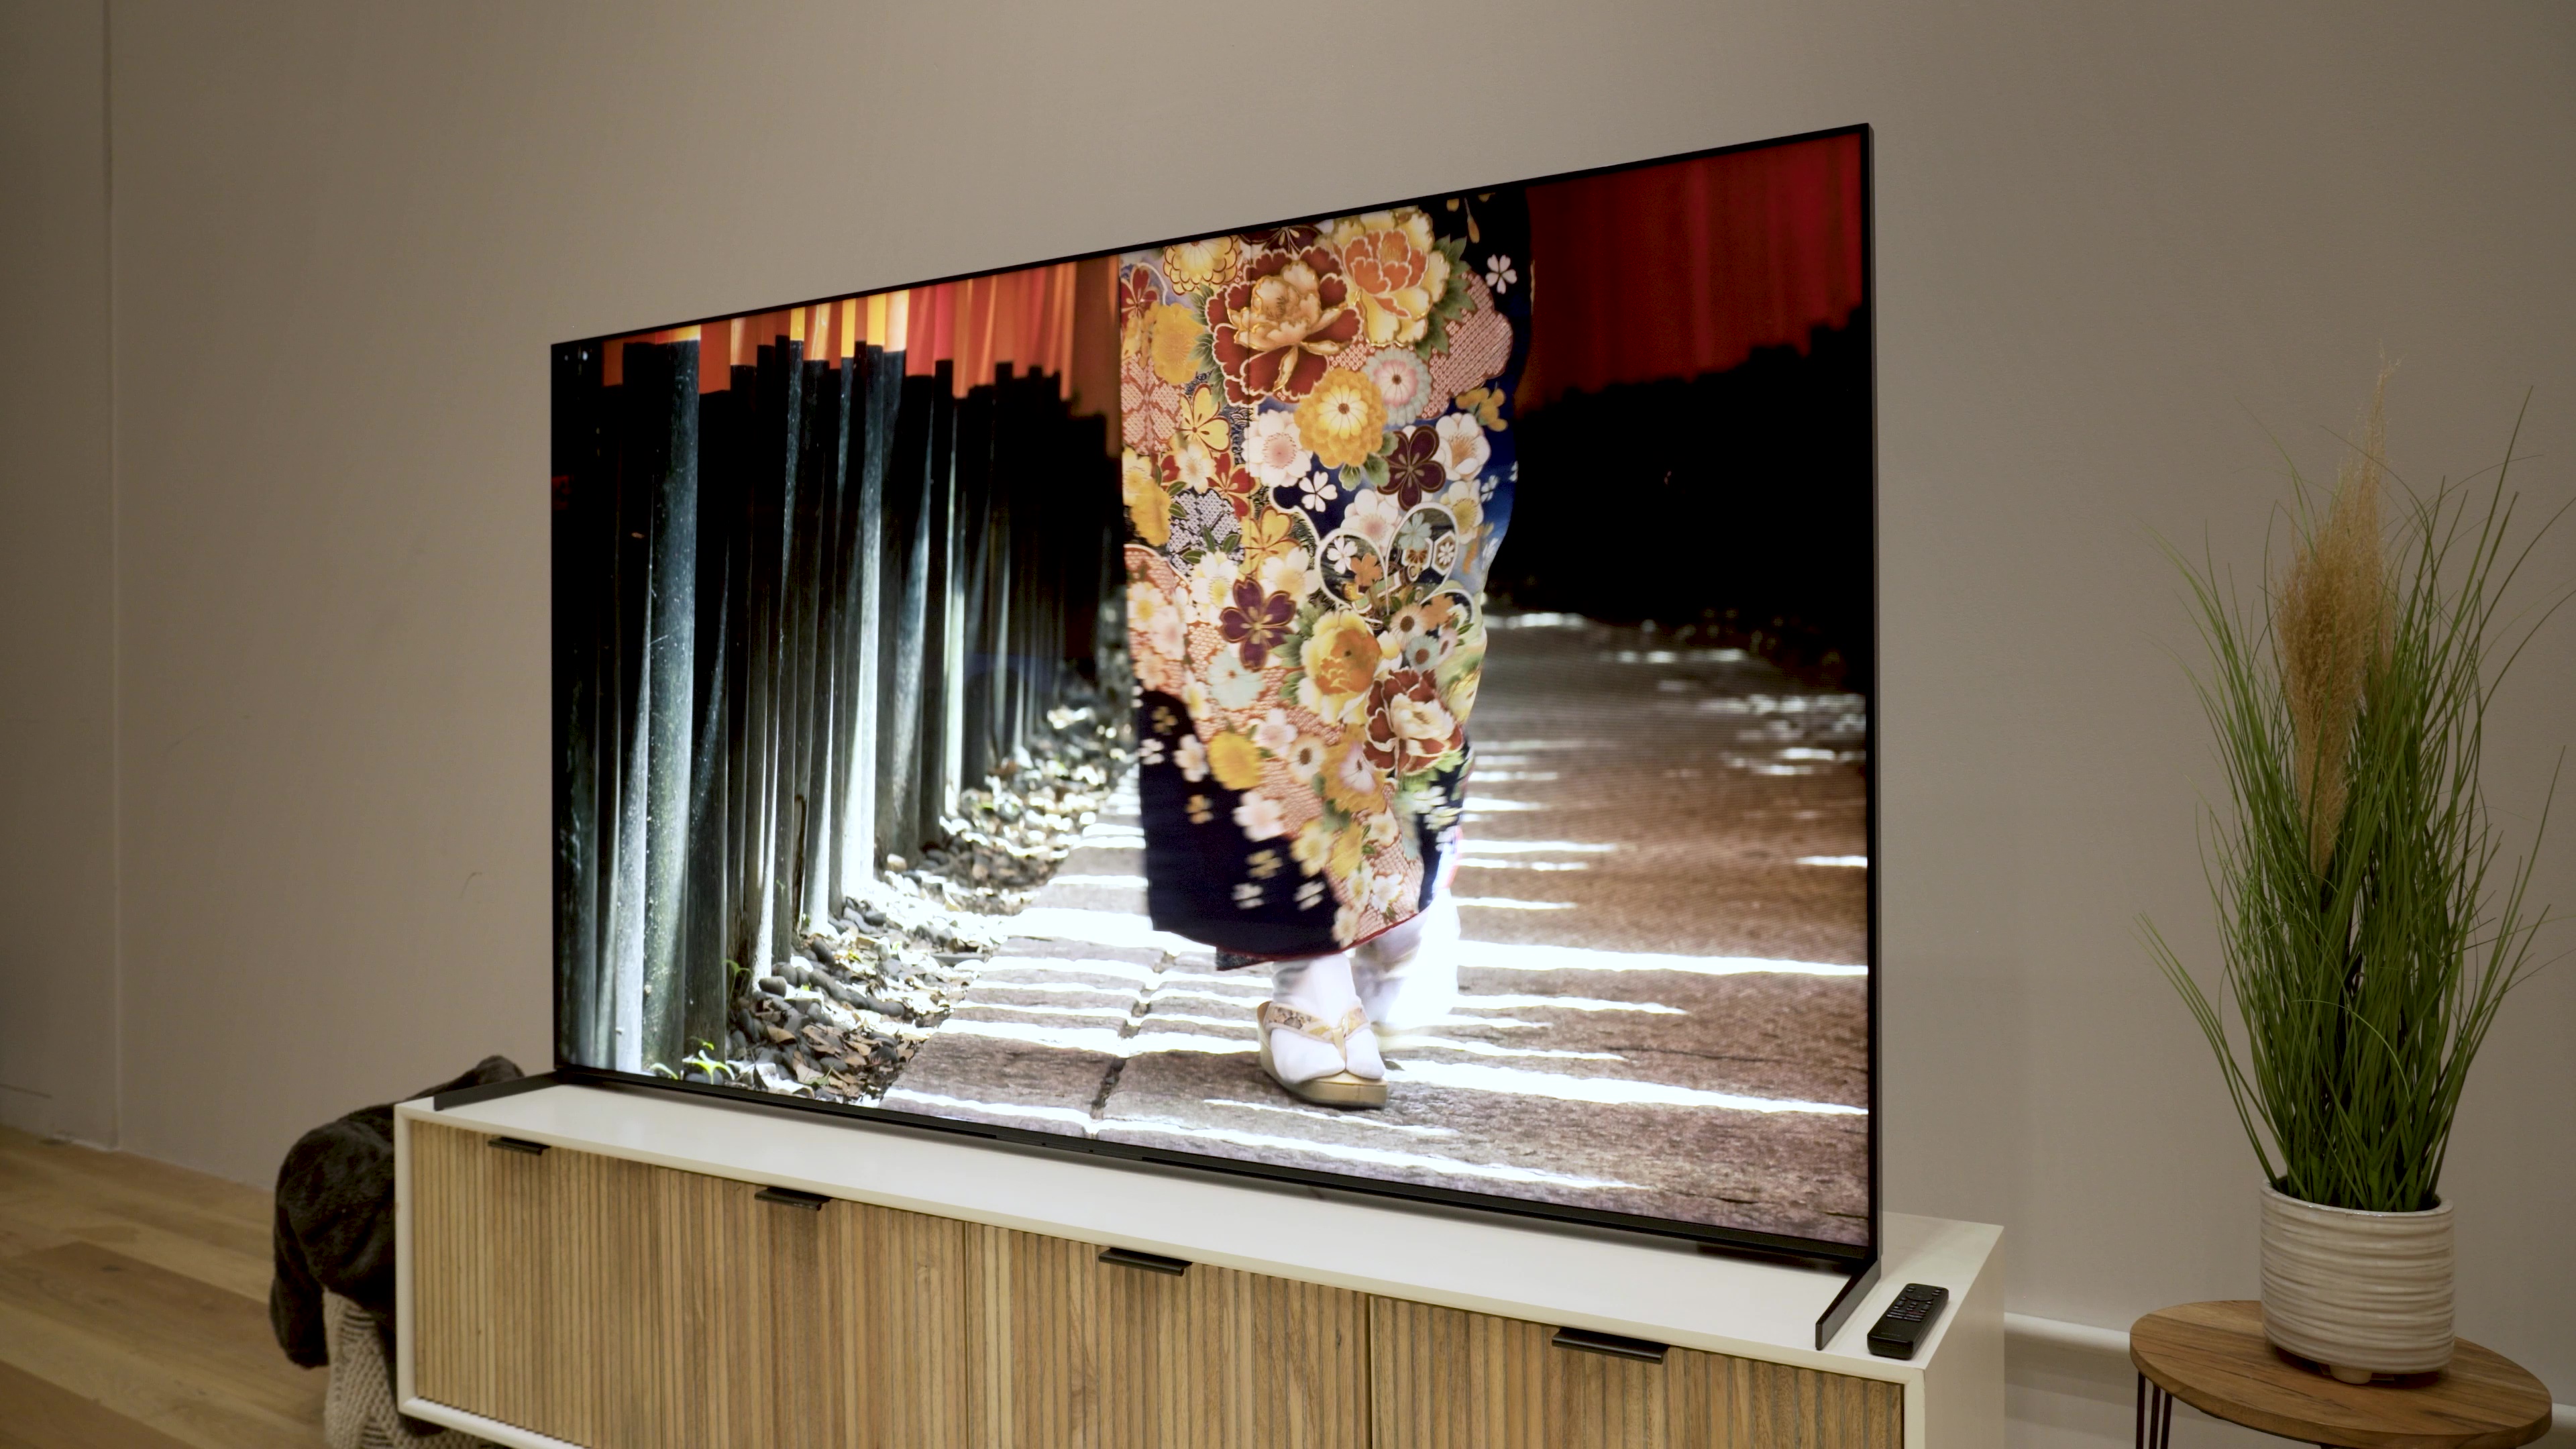 Uma peça de vestuário com padrão floral intrincado exibida em uma TV LCD Sony X95L.